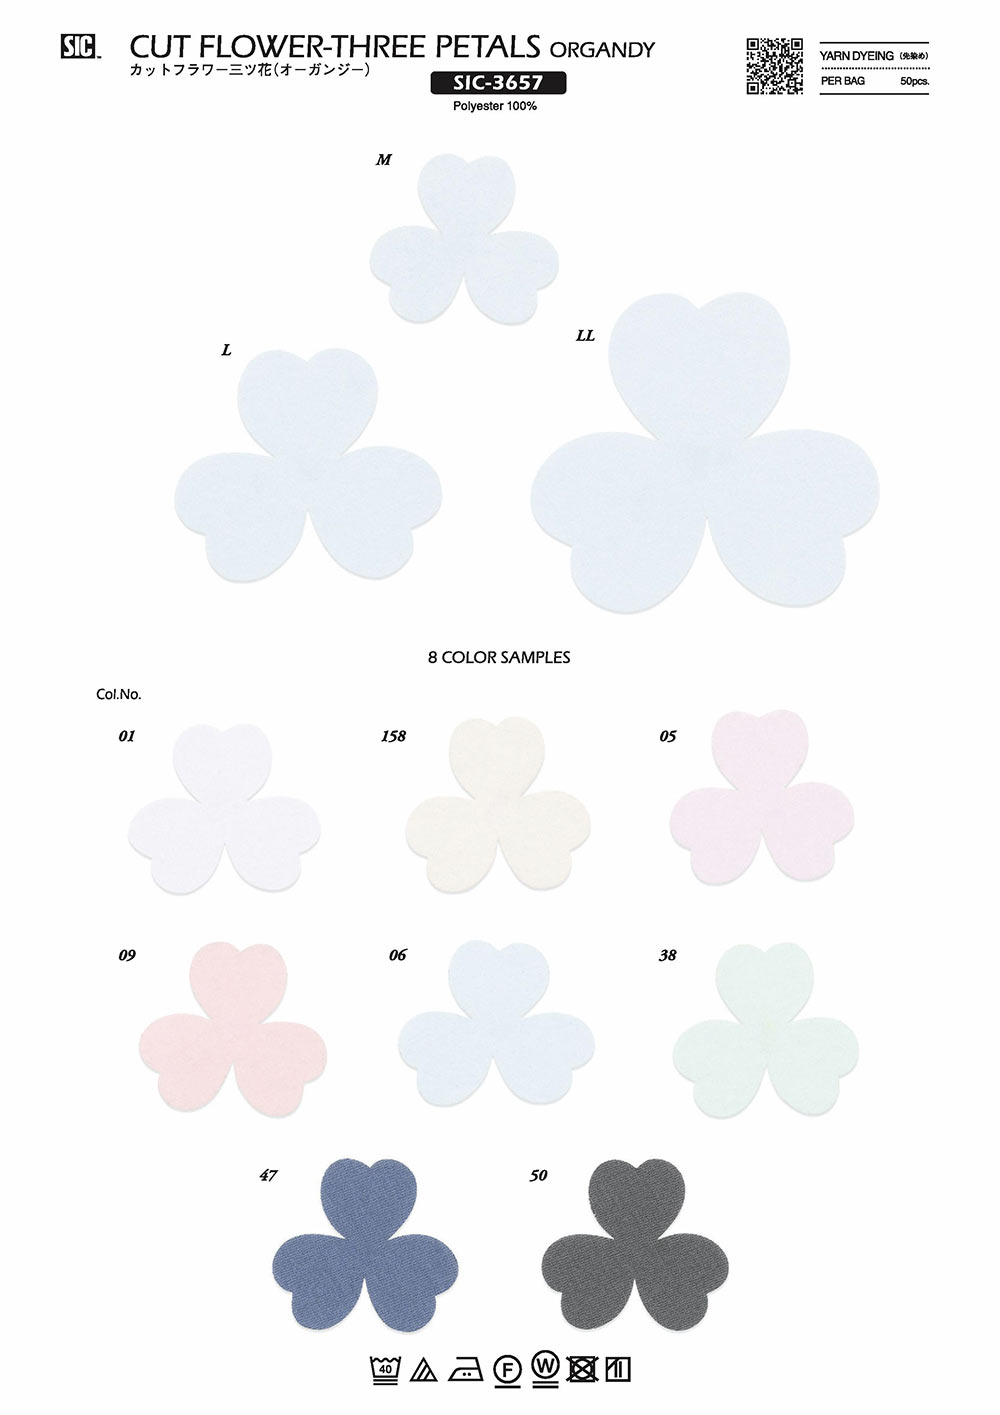 SIC-3657 Fleur Coupée Mitsuhana (Organdy)[Marchandises Diverses Et Autres] SHINDO(SIC)